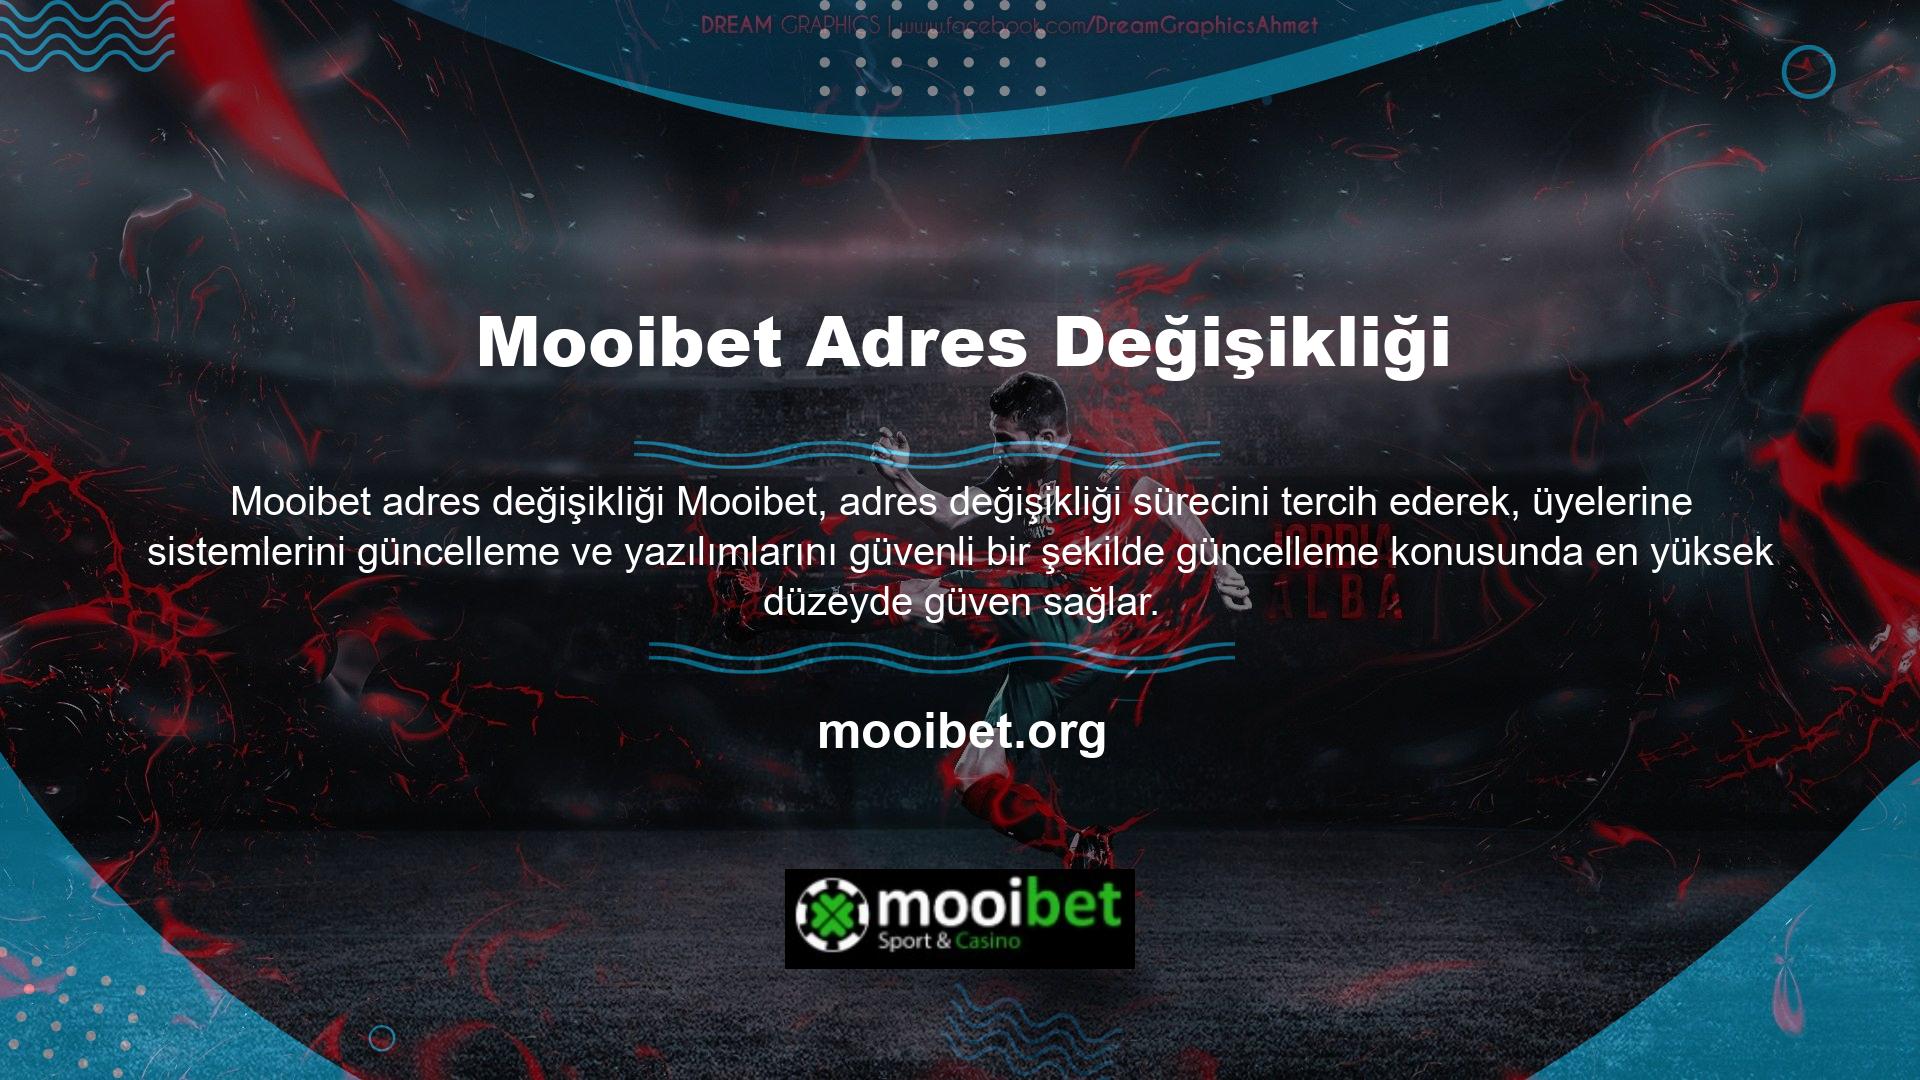 Mooibet sistemine üye olarak tanımlanan kullanıcıların bilgileri özel olarak saklanacak ve izinsiz olarak şirket çalışanları dahil kimseyle paylaşılmayacaktır, ancak sadece para yatırma ve çekme yöntemlerini görebilirsiniz